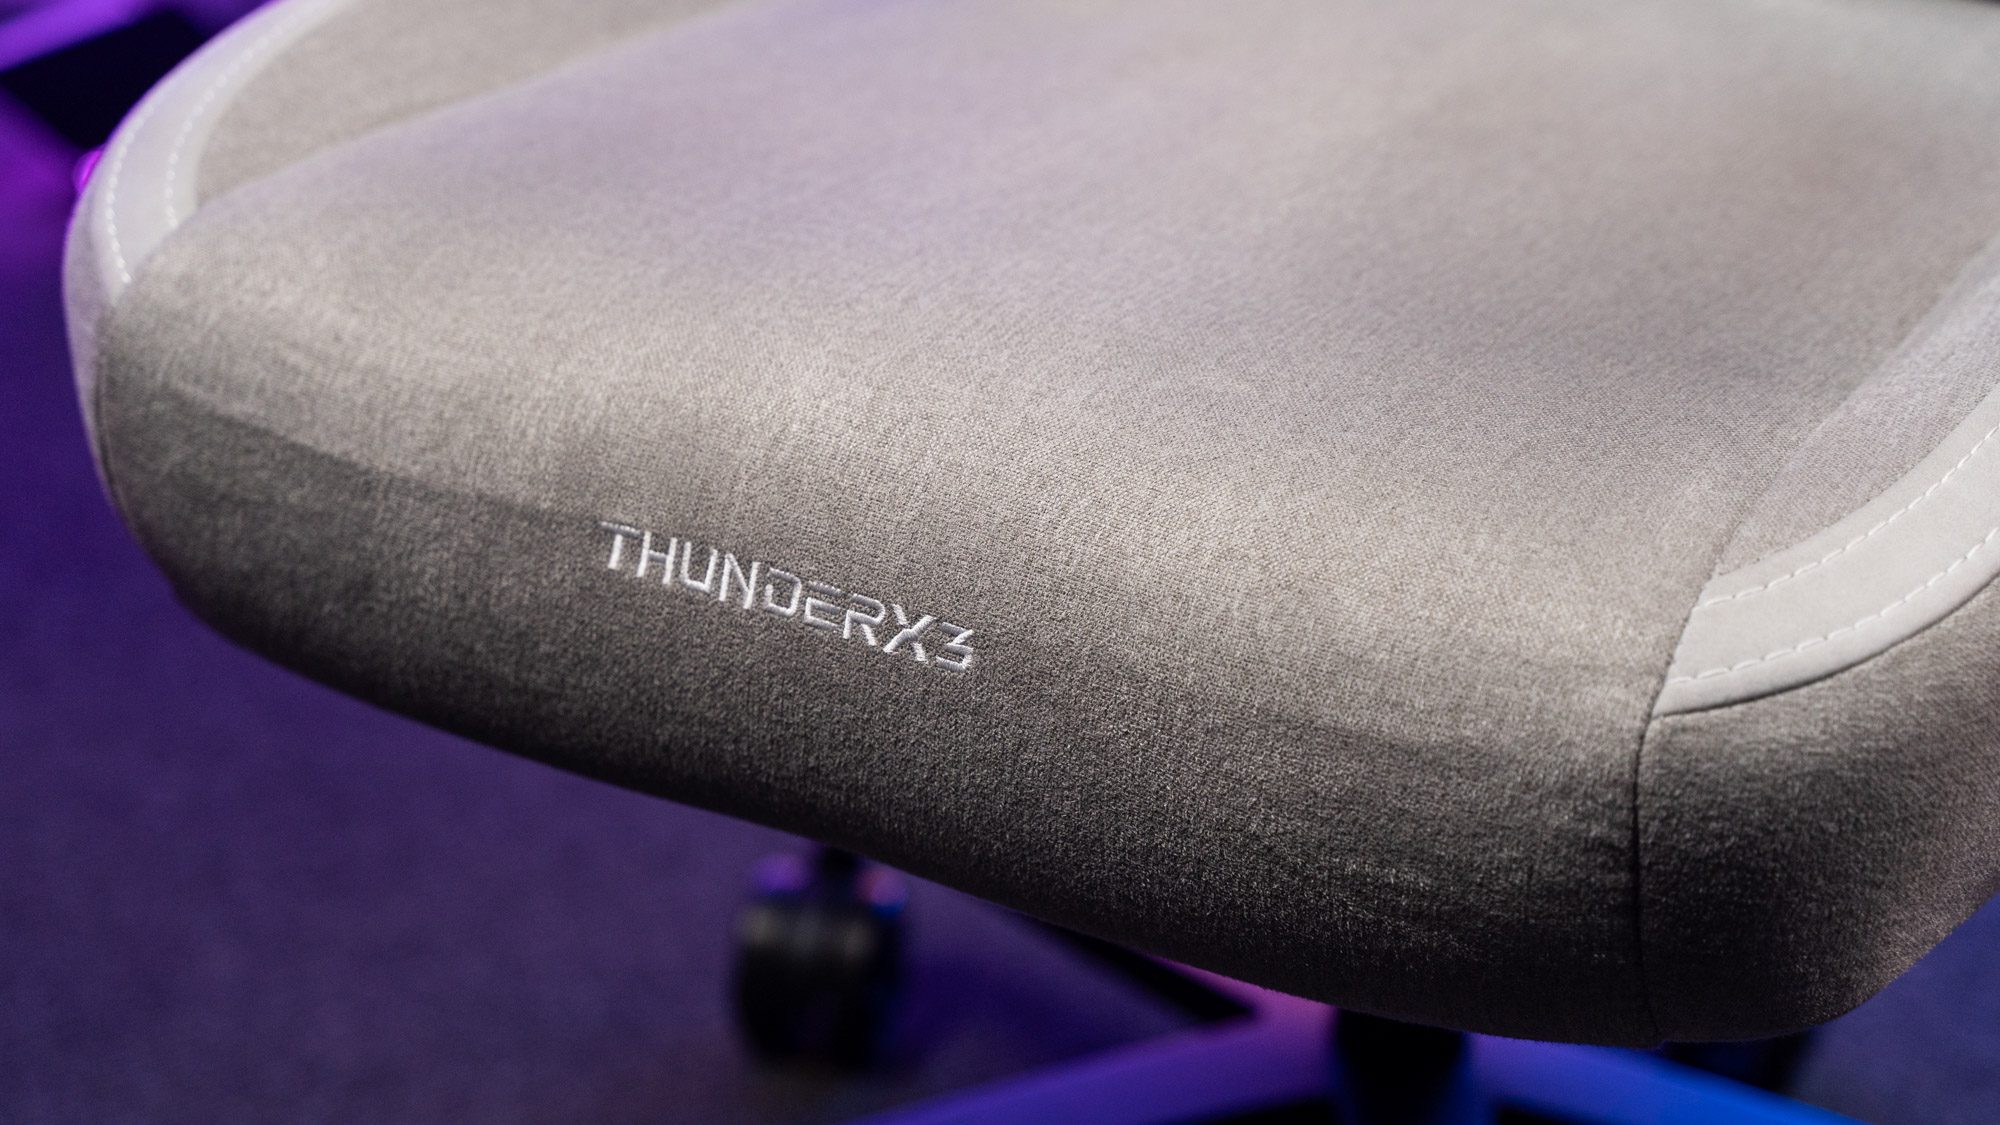 Grauer Stoffbezug auf Sitzfläche eines Gaming-Stuhls mit Schriftzug "ThunderX3"